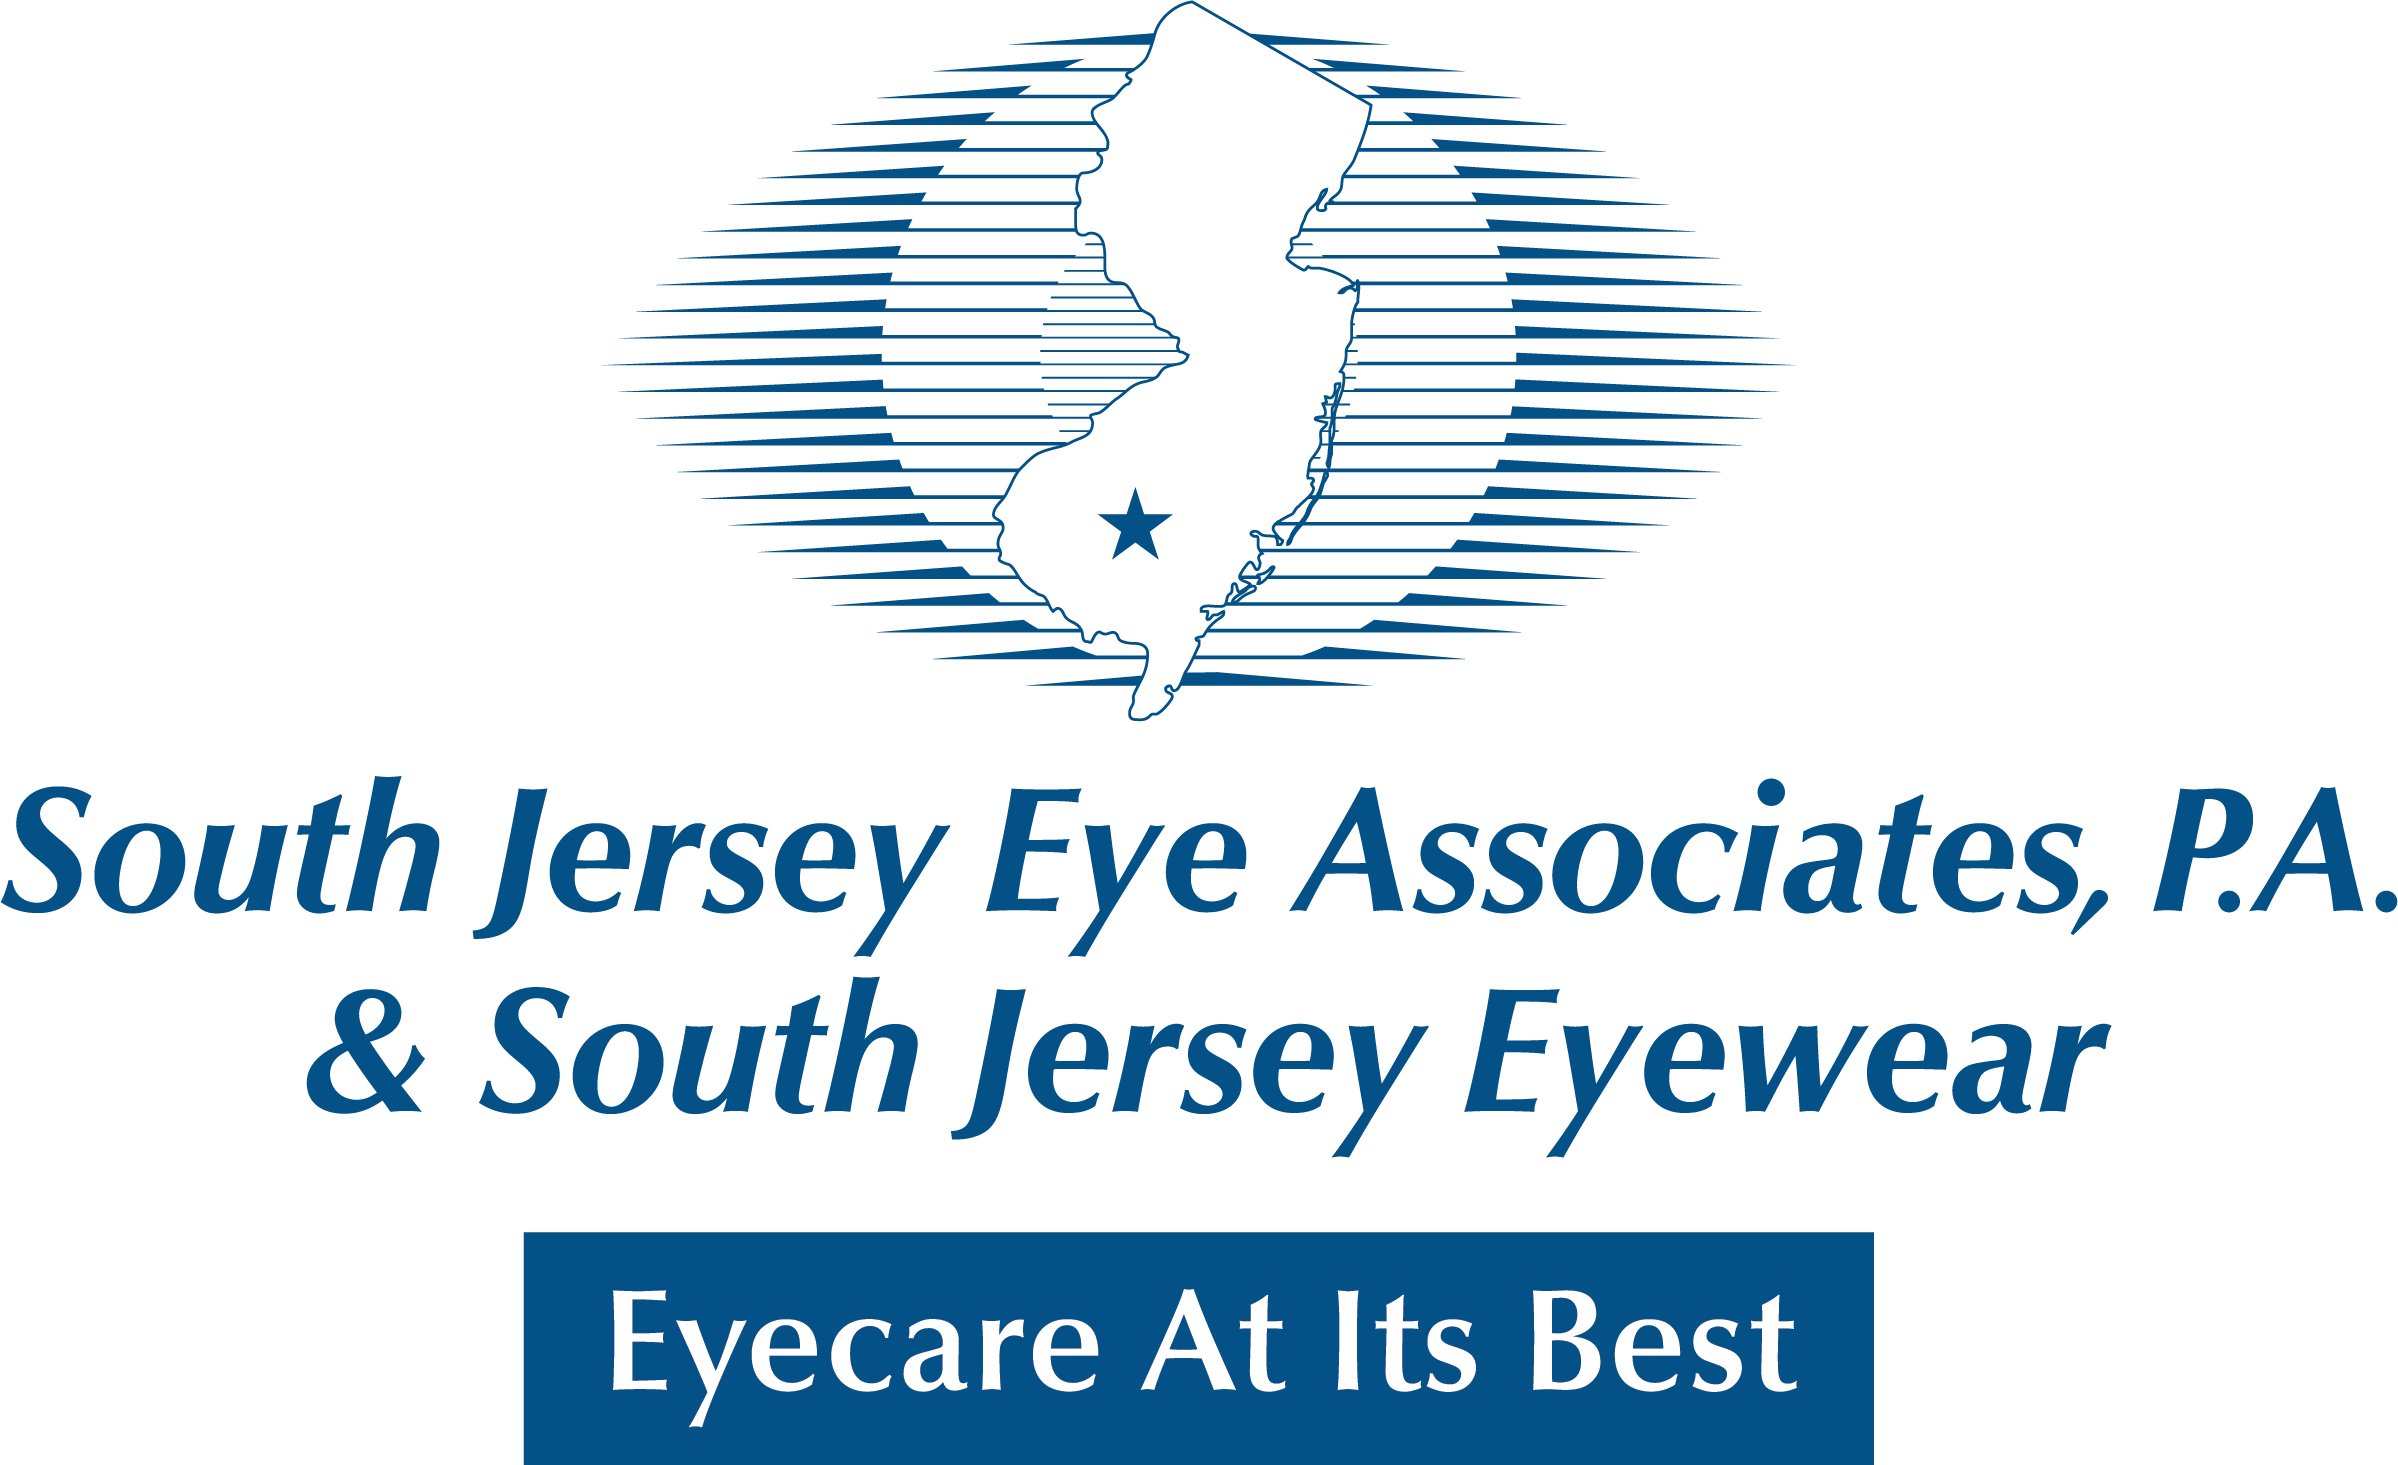 South Jersey Eye Associates